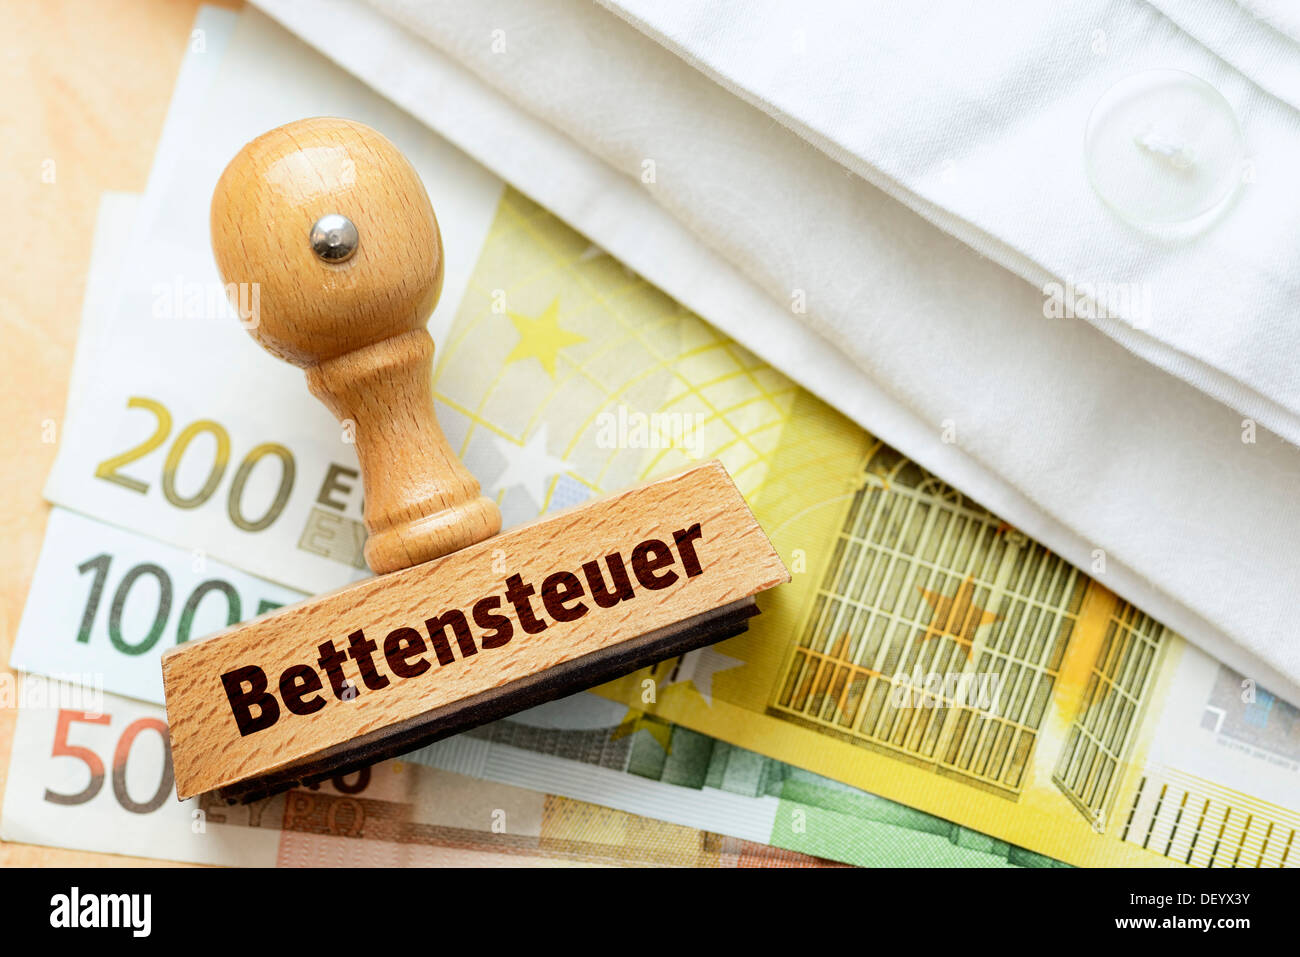 Stempel mit dem Begriff "Bettensteuer" Deutsch für "Bettensteuer" für Euro-Banknoten und ein Bettlaken Stockfoto